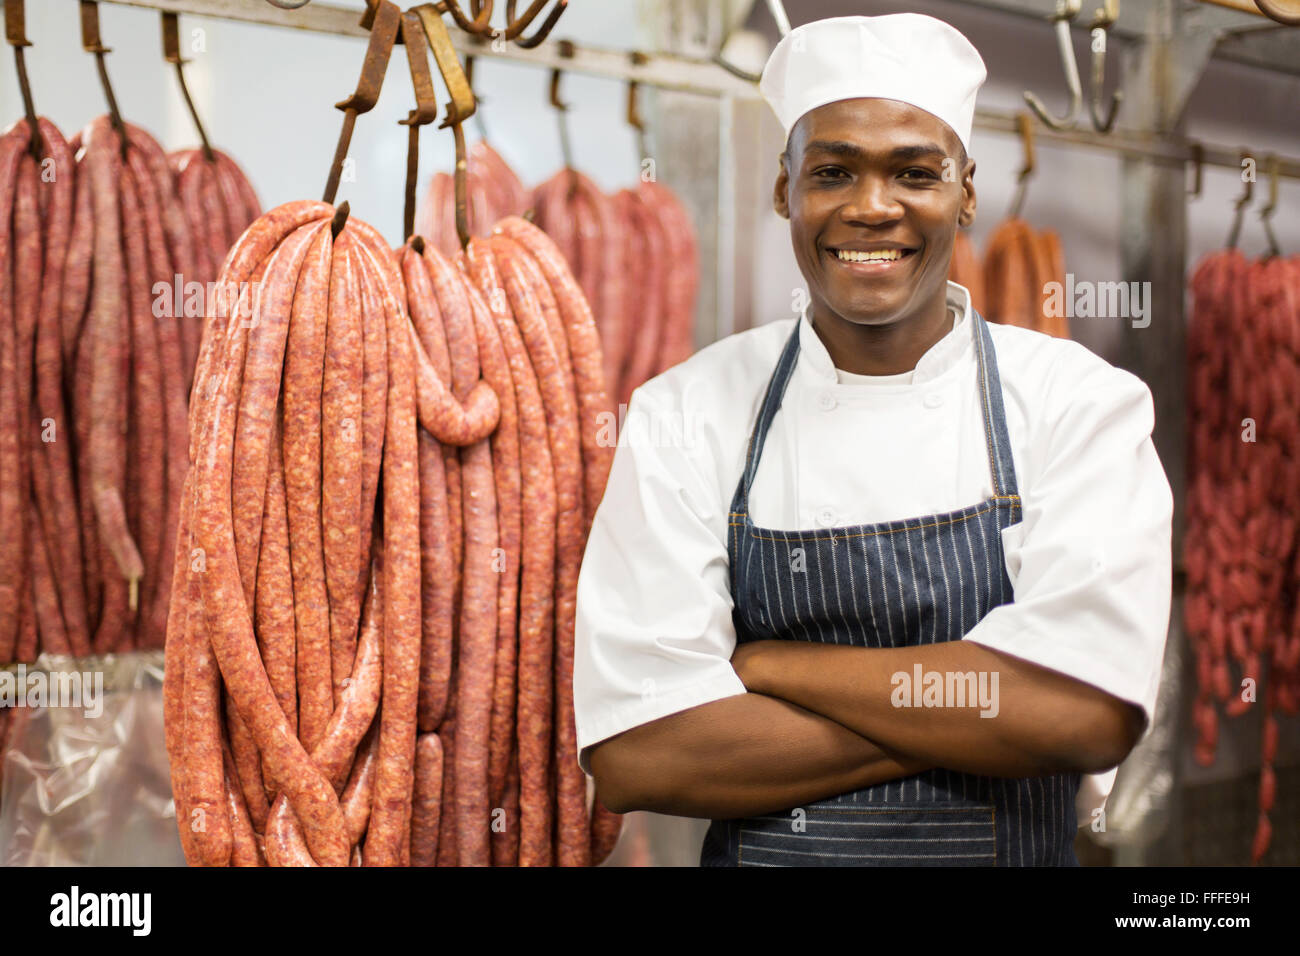 Portrait de jeunes Africains butcher in storage Banque D'Images